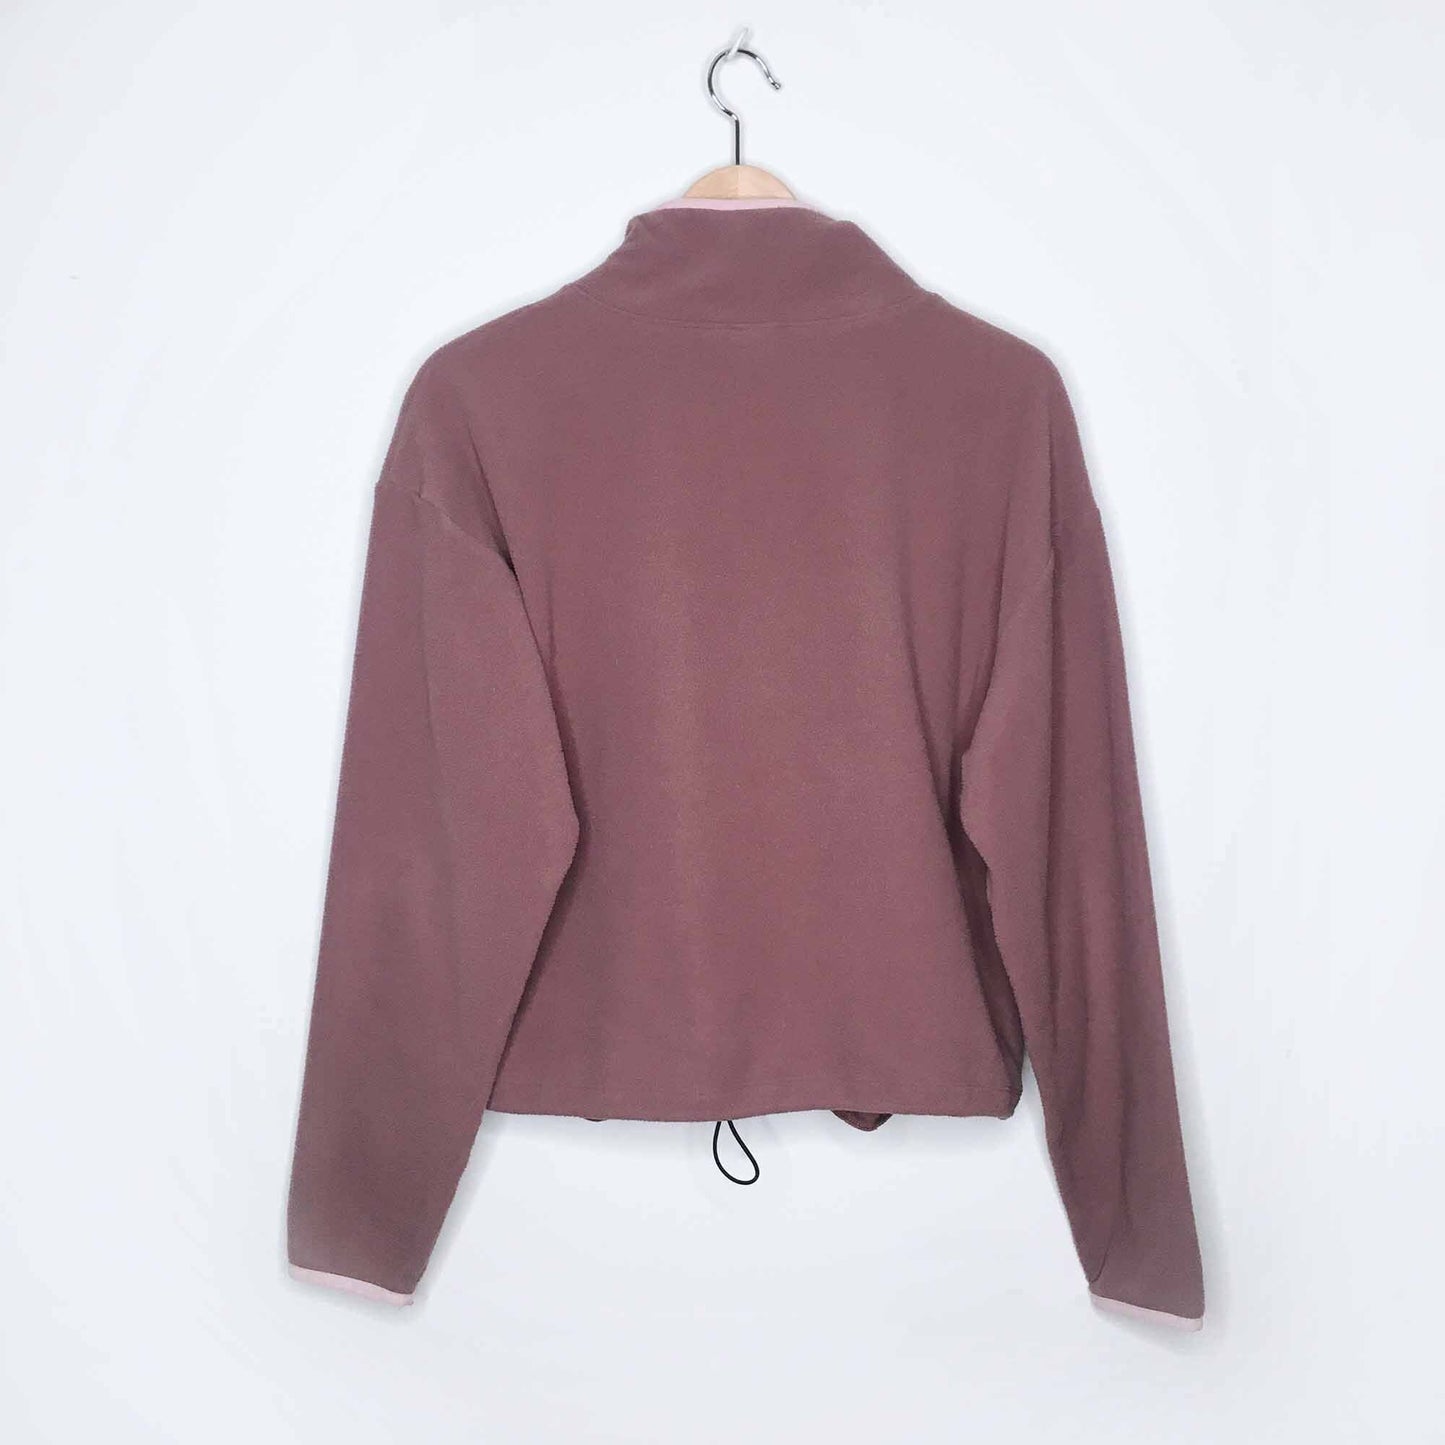 victoria's secret PINK 1/4 zip fleece sweater - size medium